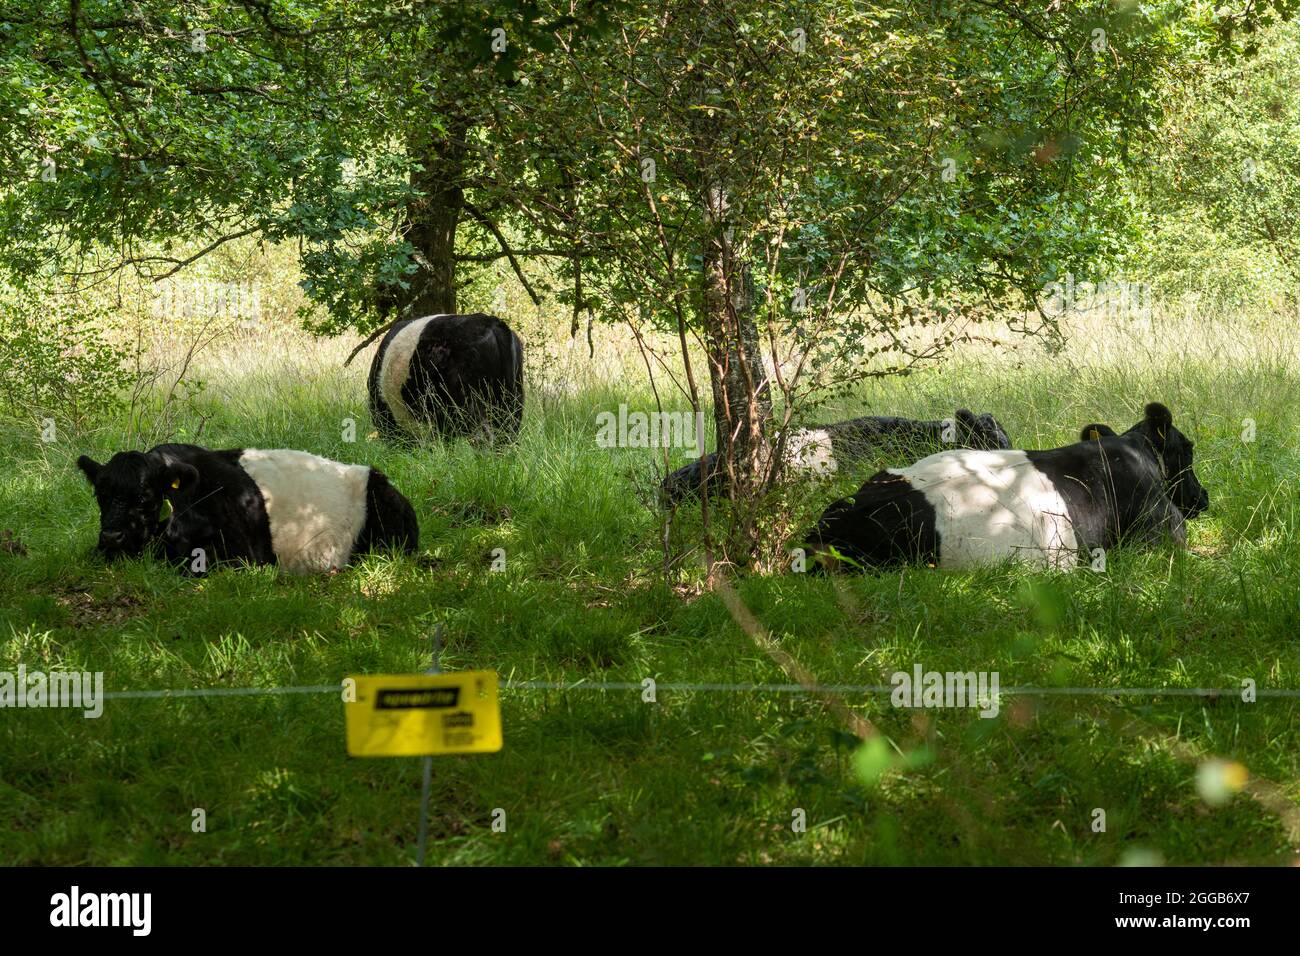 Belted galloway-Rinder grasen auf einem Naturschutzgebiet, um das Wachstum von Gestrüpp hinter einem elektrischen Zaun zu kontrollieren, UK Wildlife Habitat Management Stockfoto